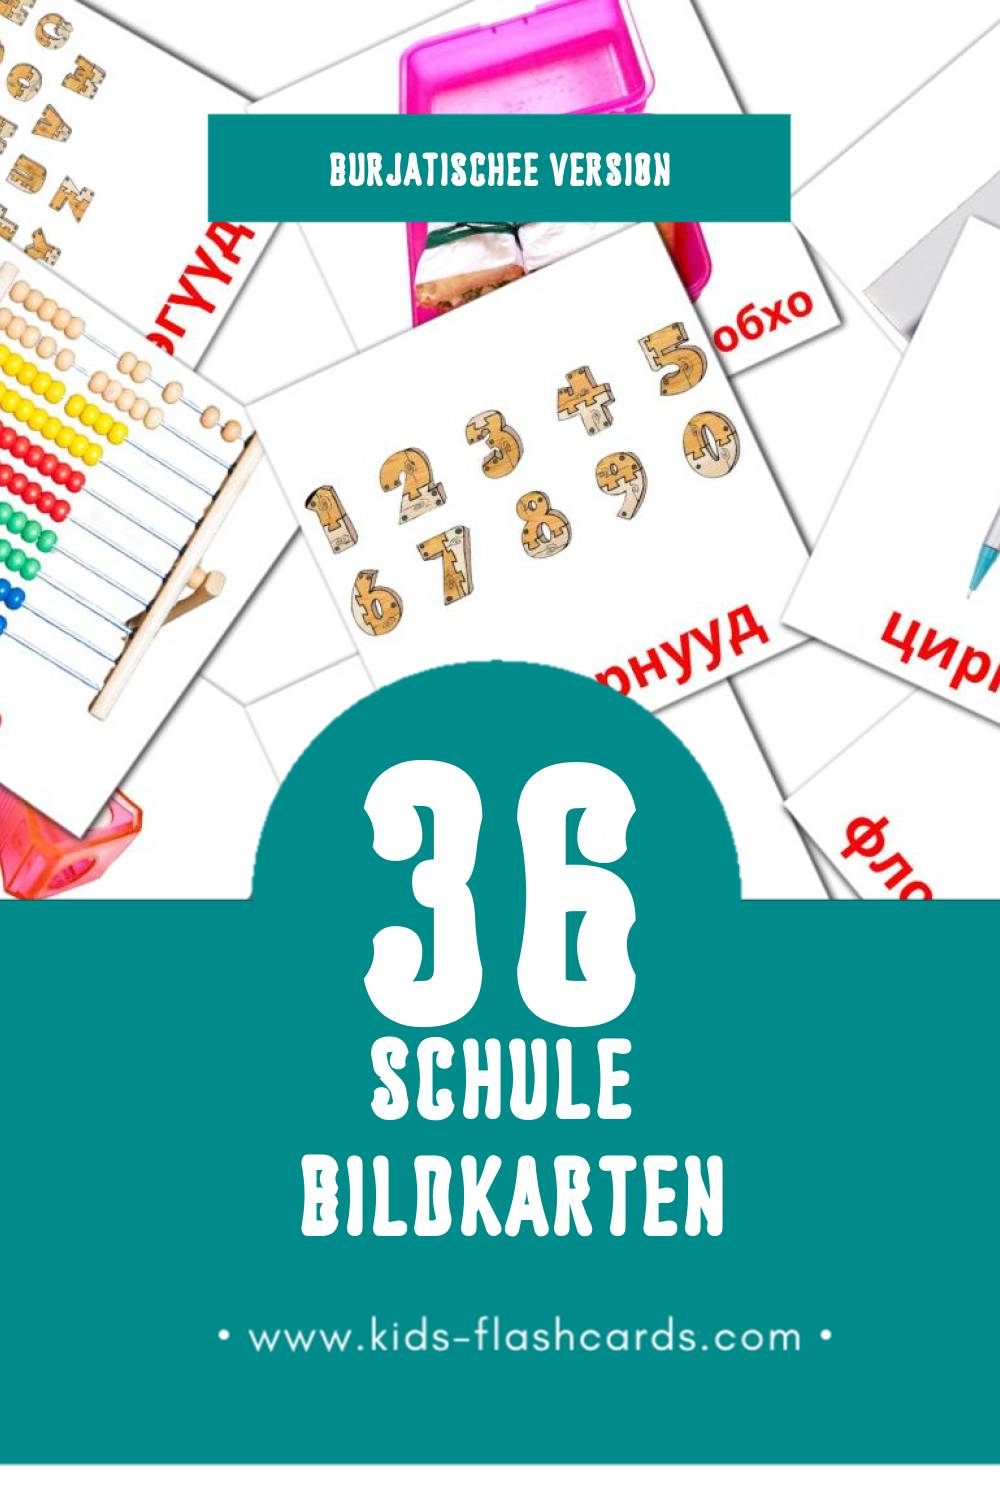 Visual hургуули Flashcards für Kleinkinder (36 Karten in Burjatische)